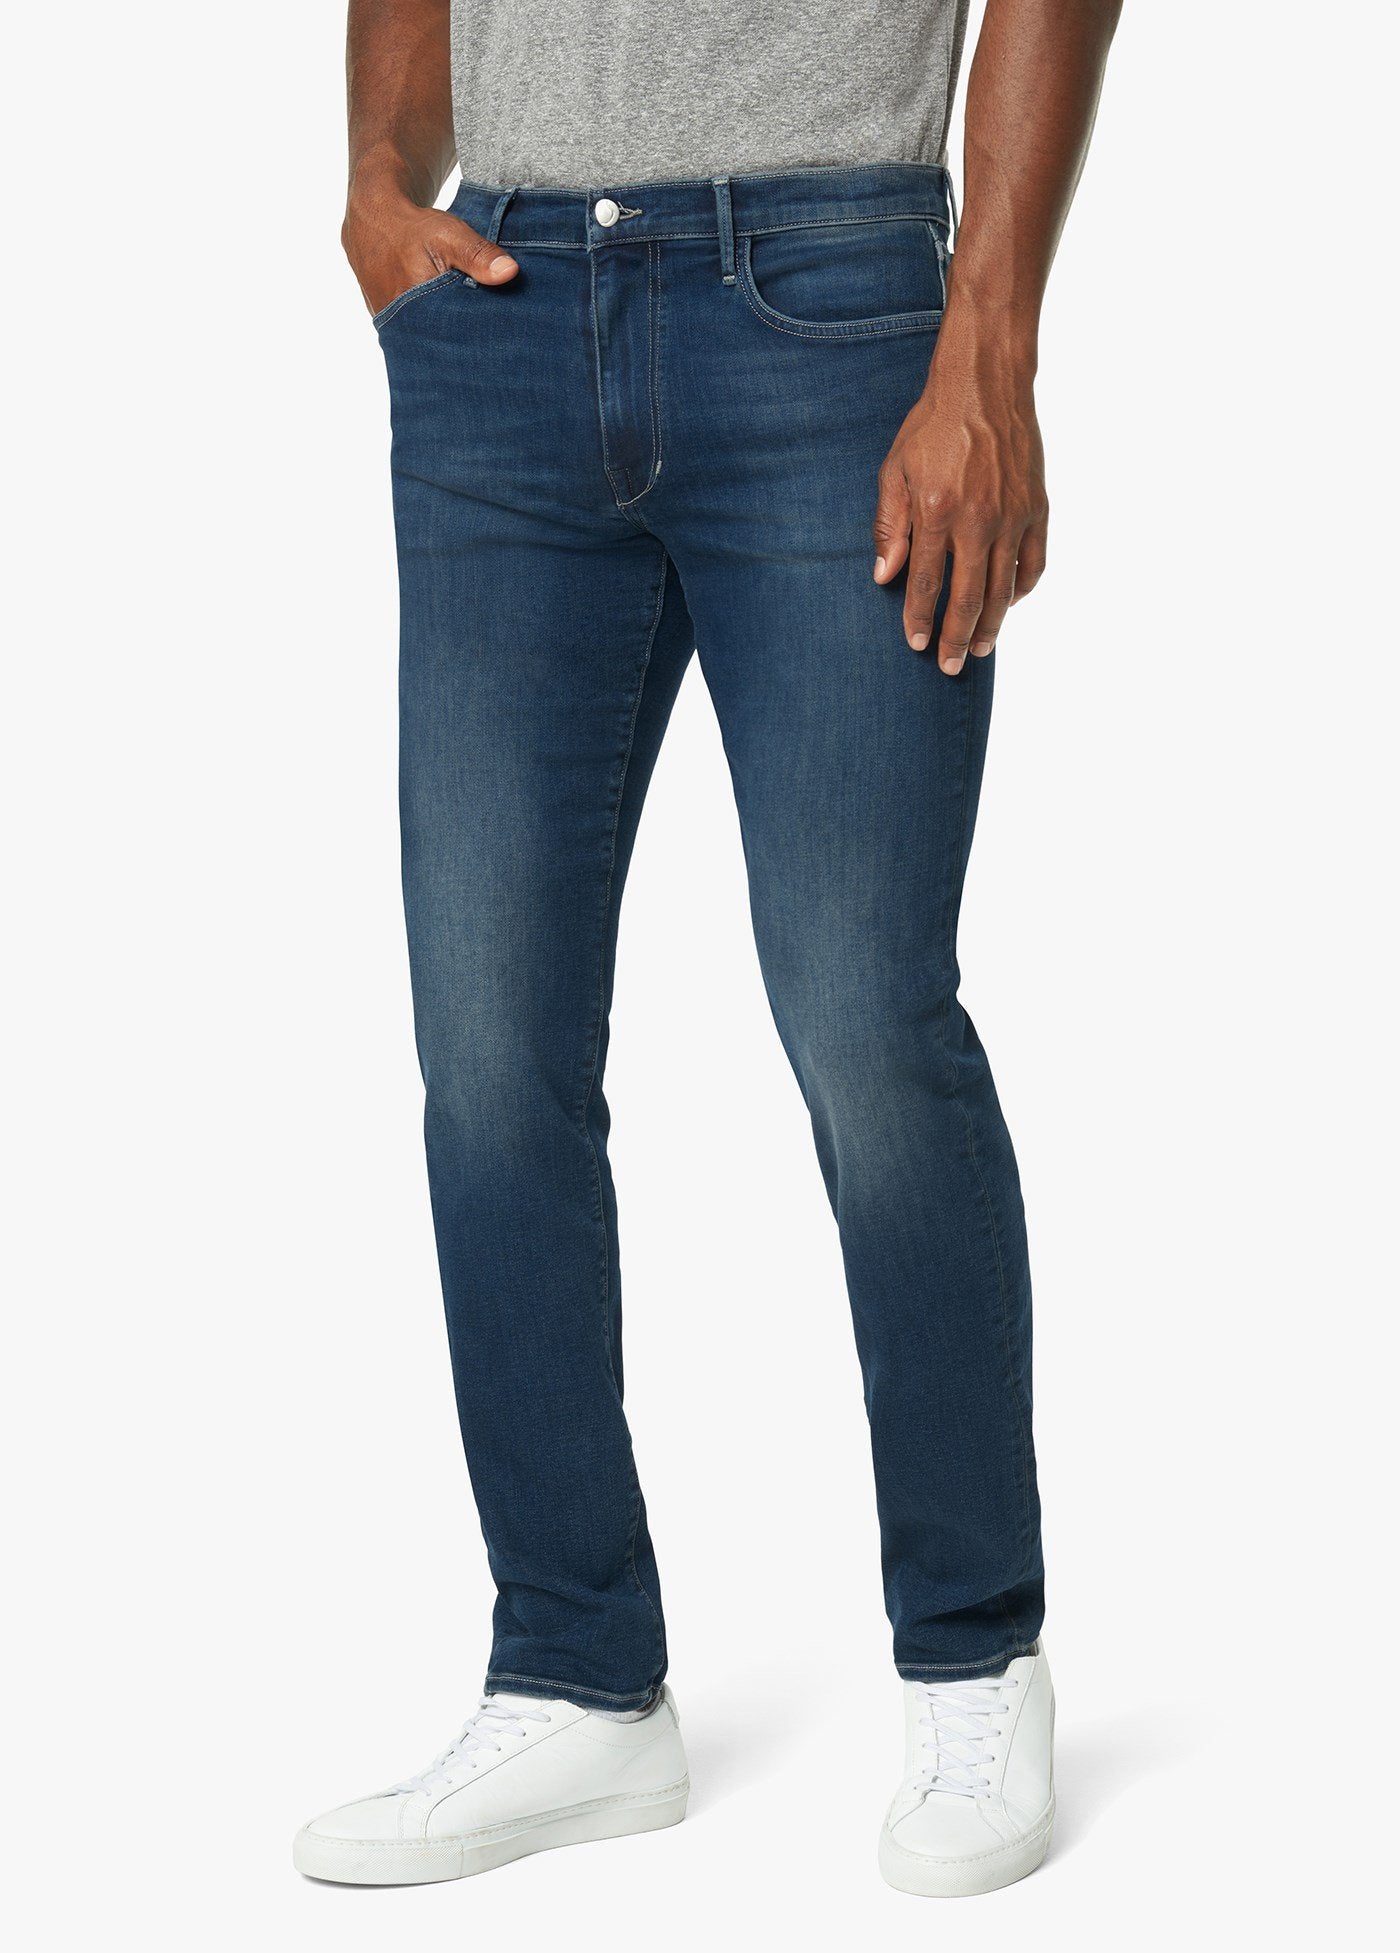 Joe's Jeans Asher Cut - Crick – Giovanni's Fine Fashions